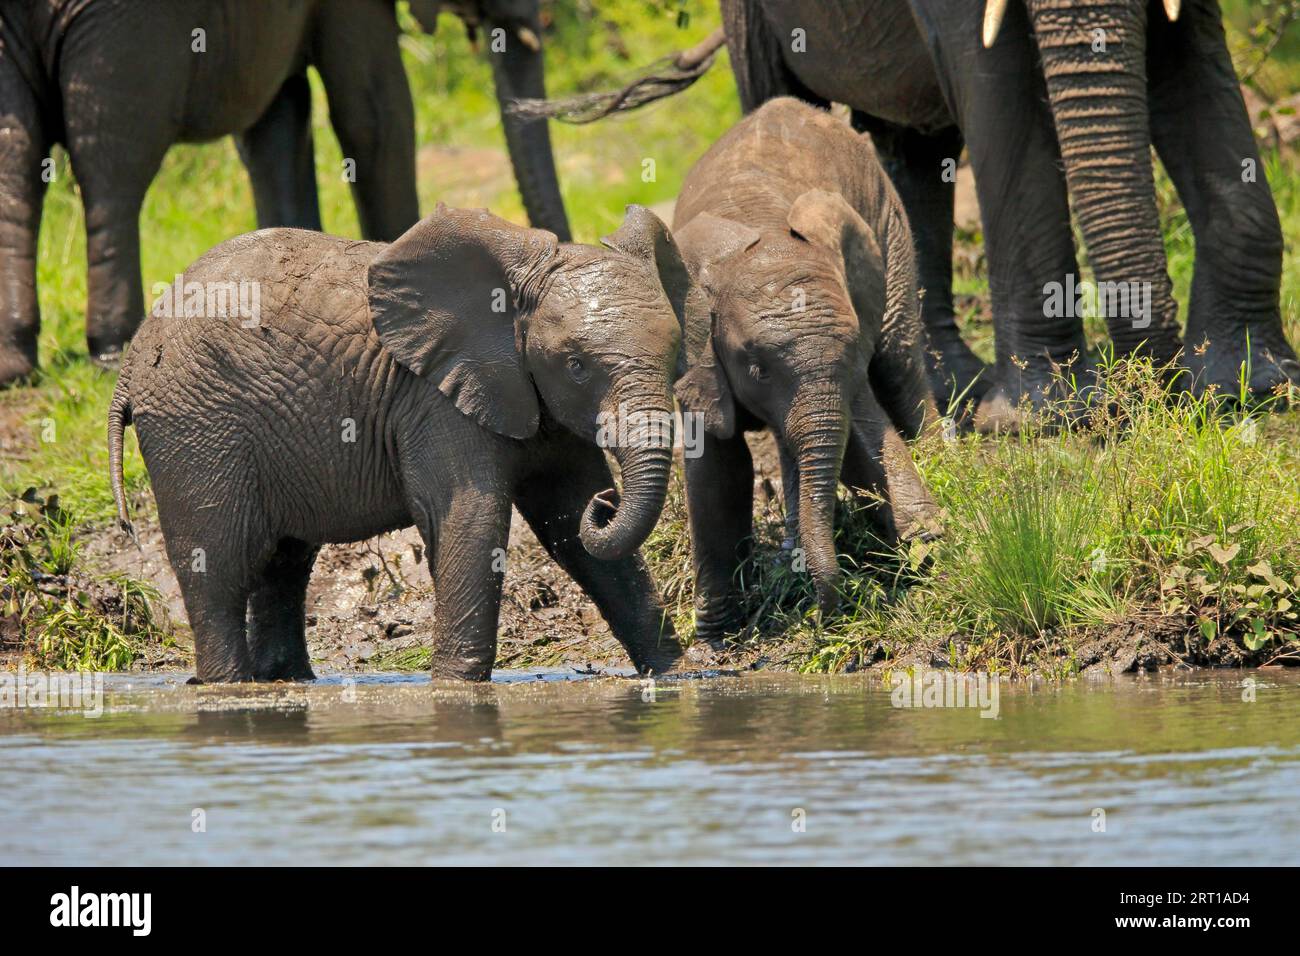 Elefante africano (Loxodonta africana), joven, en el agua, bebiendo, Parque Nacional Kruger, Sudáfrica Foto de stock